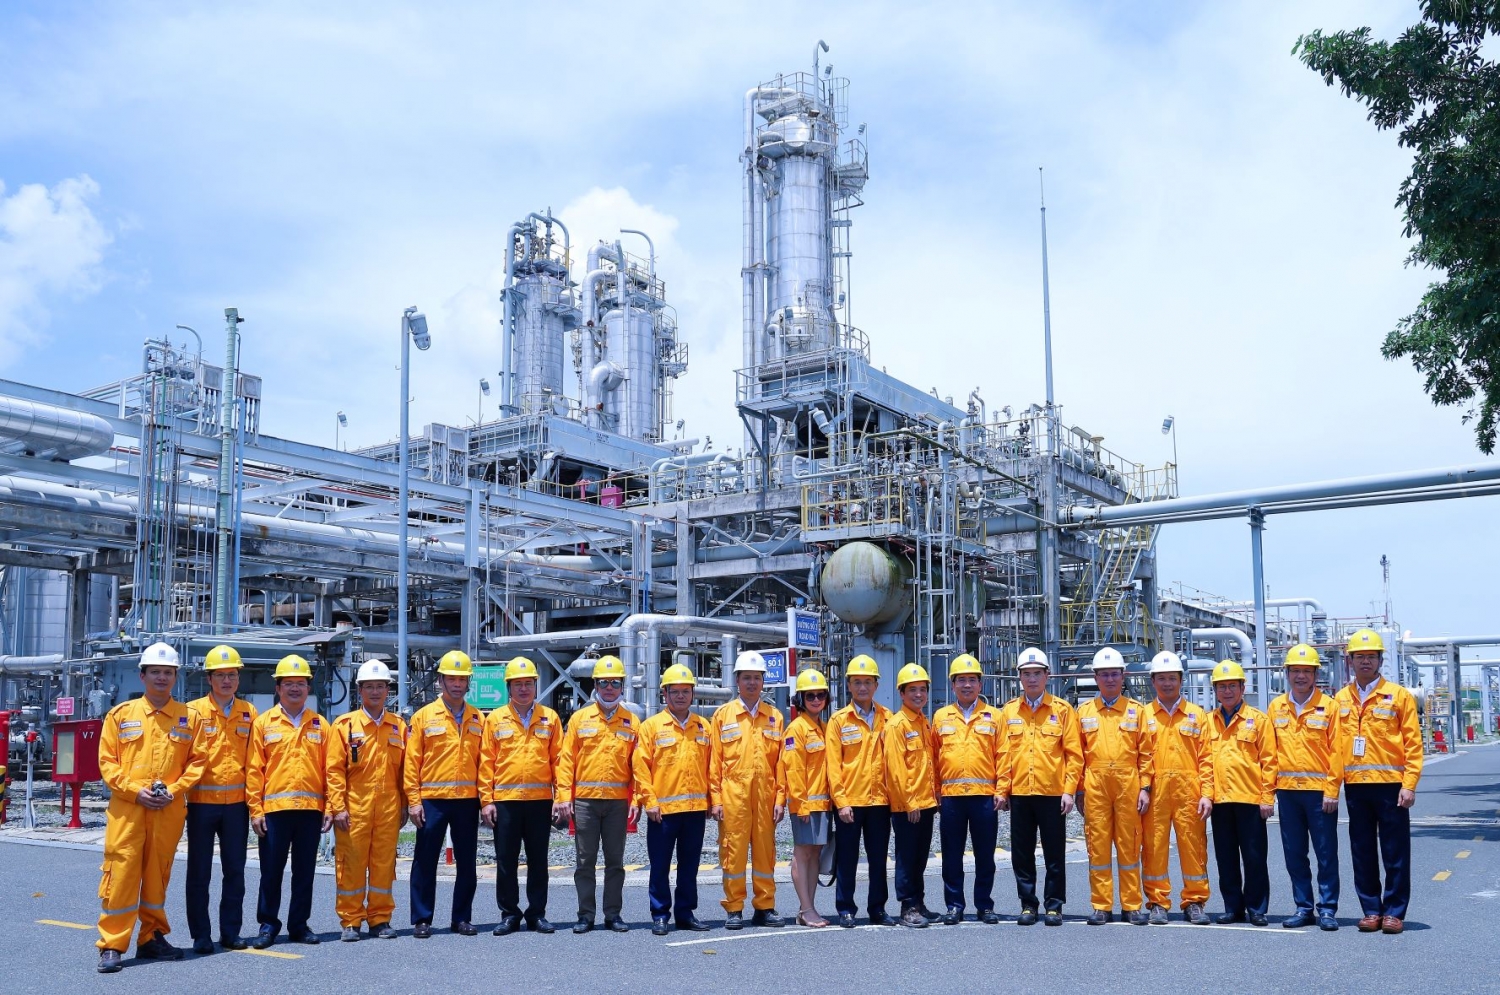 Đoàn công tác của Tập đoàn Dầu khí Việt Nam do Phó Tổng Giám đốc Lê Xuân Huyên làm trưởng đoàn đã đến thăm Nhà máy Chế biến Khí Vũng Tàu